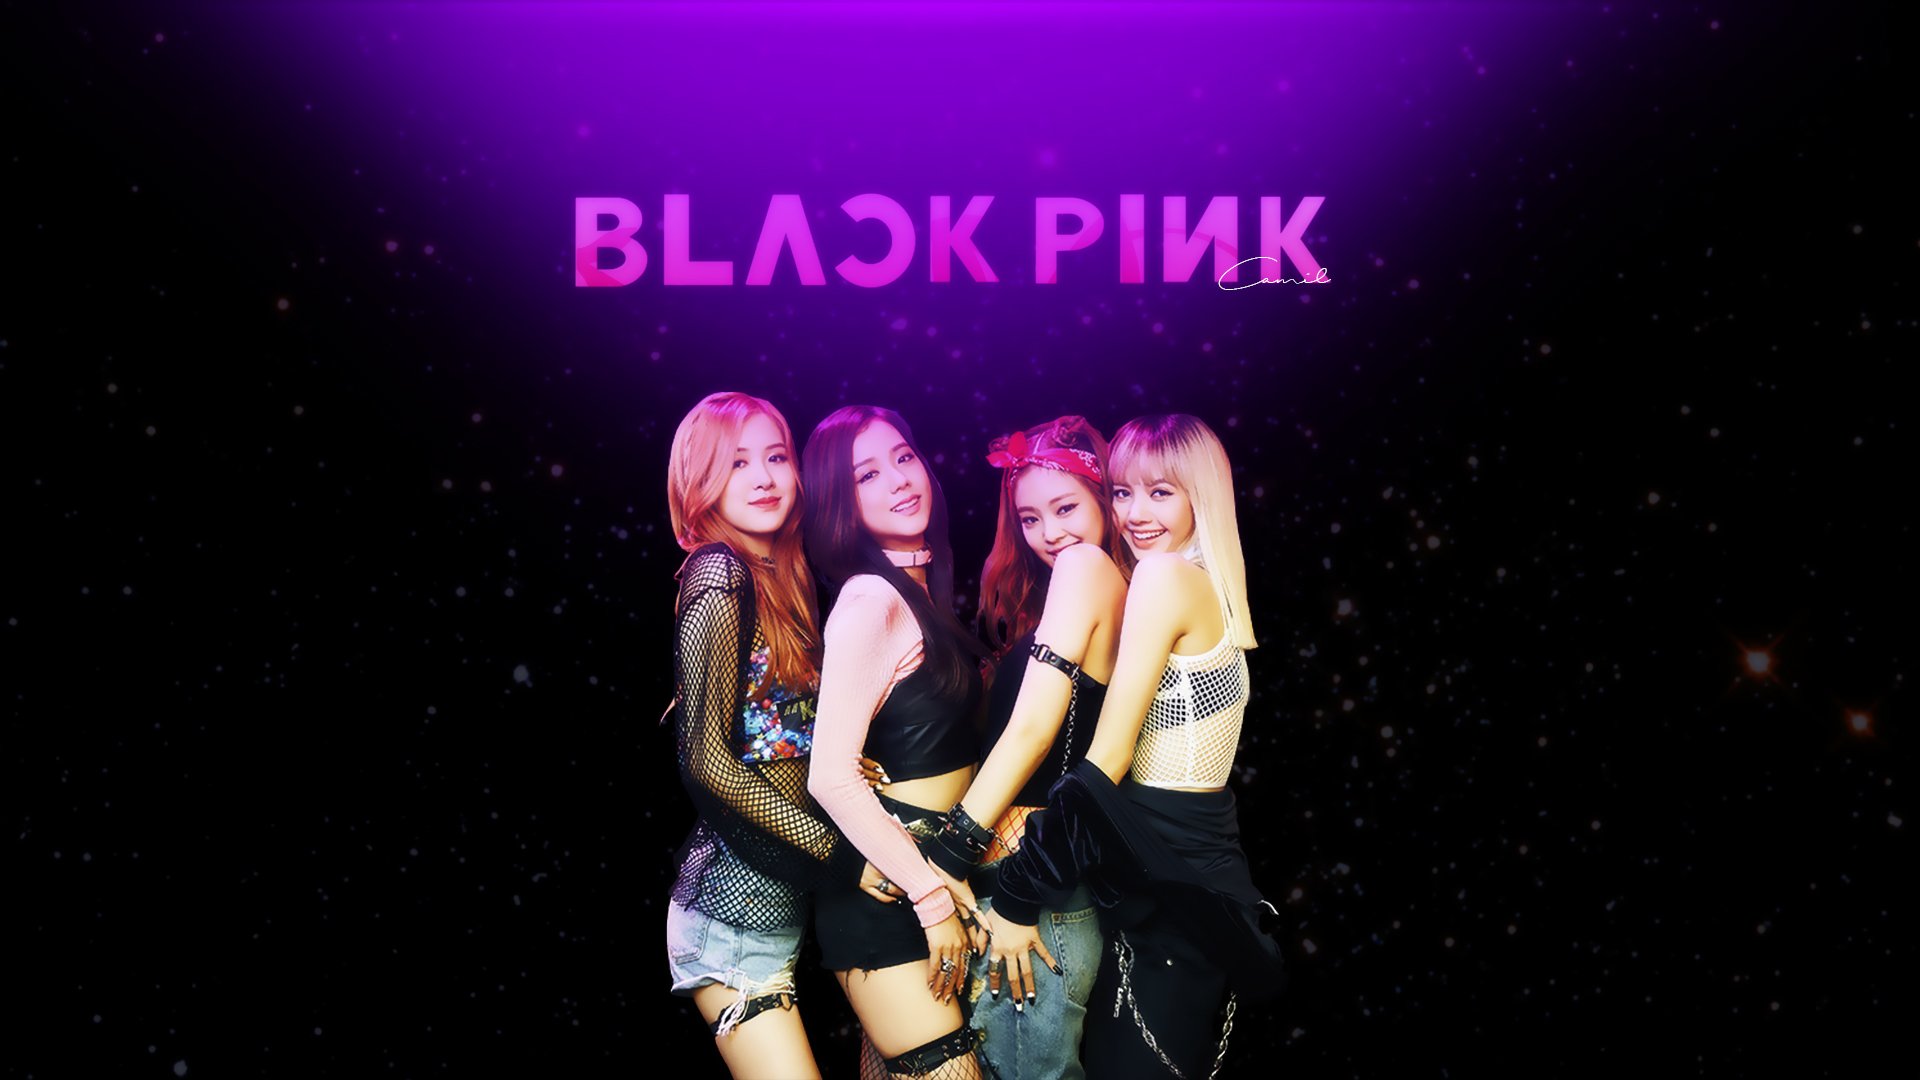 Blackpink HD Wallpaper Background Image